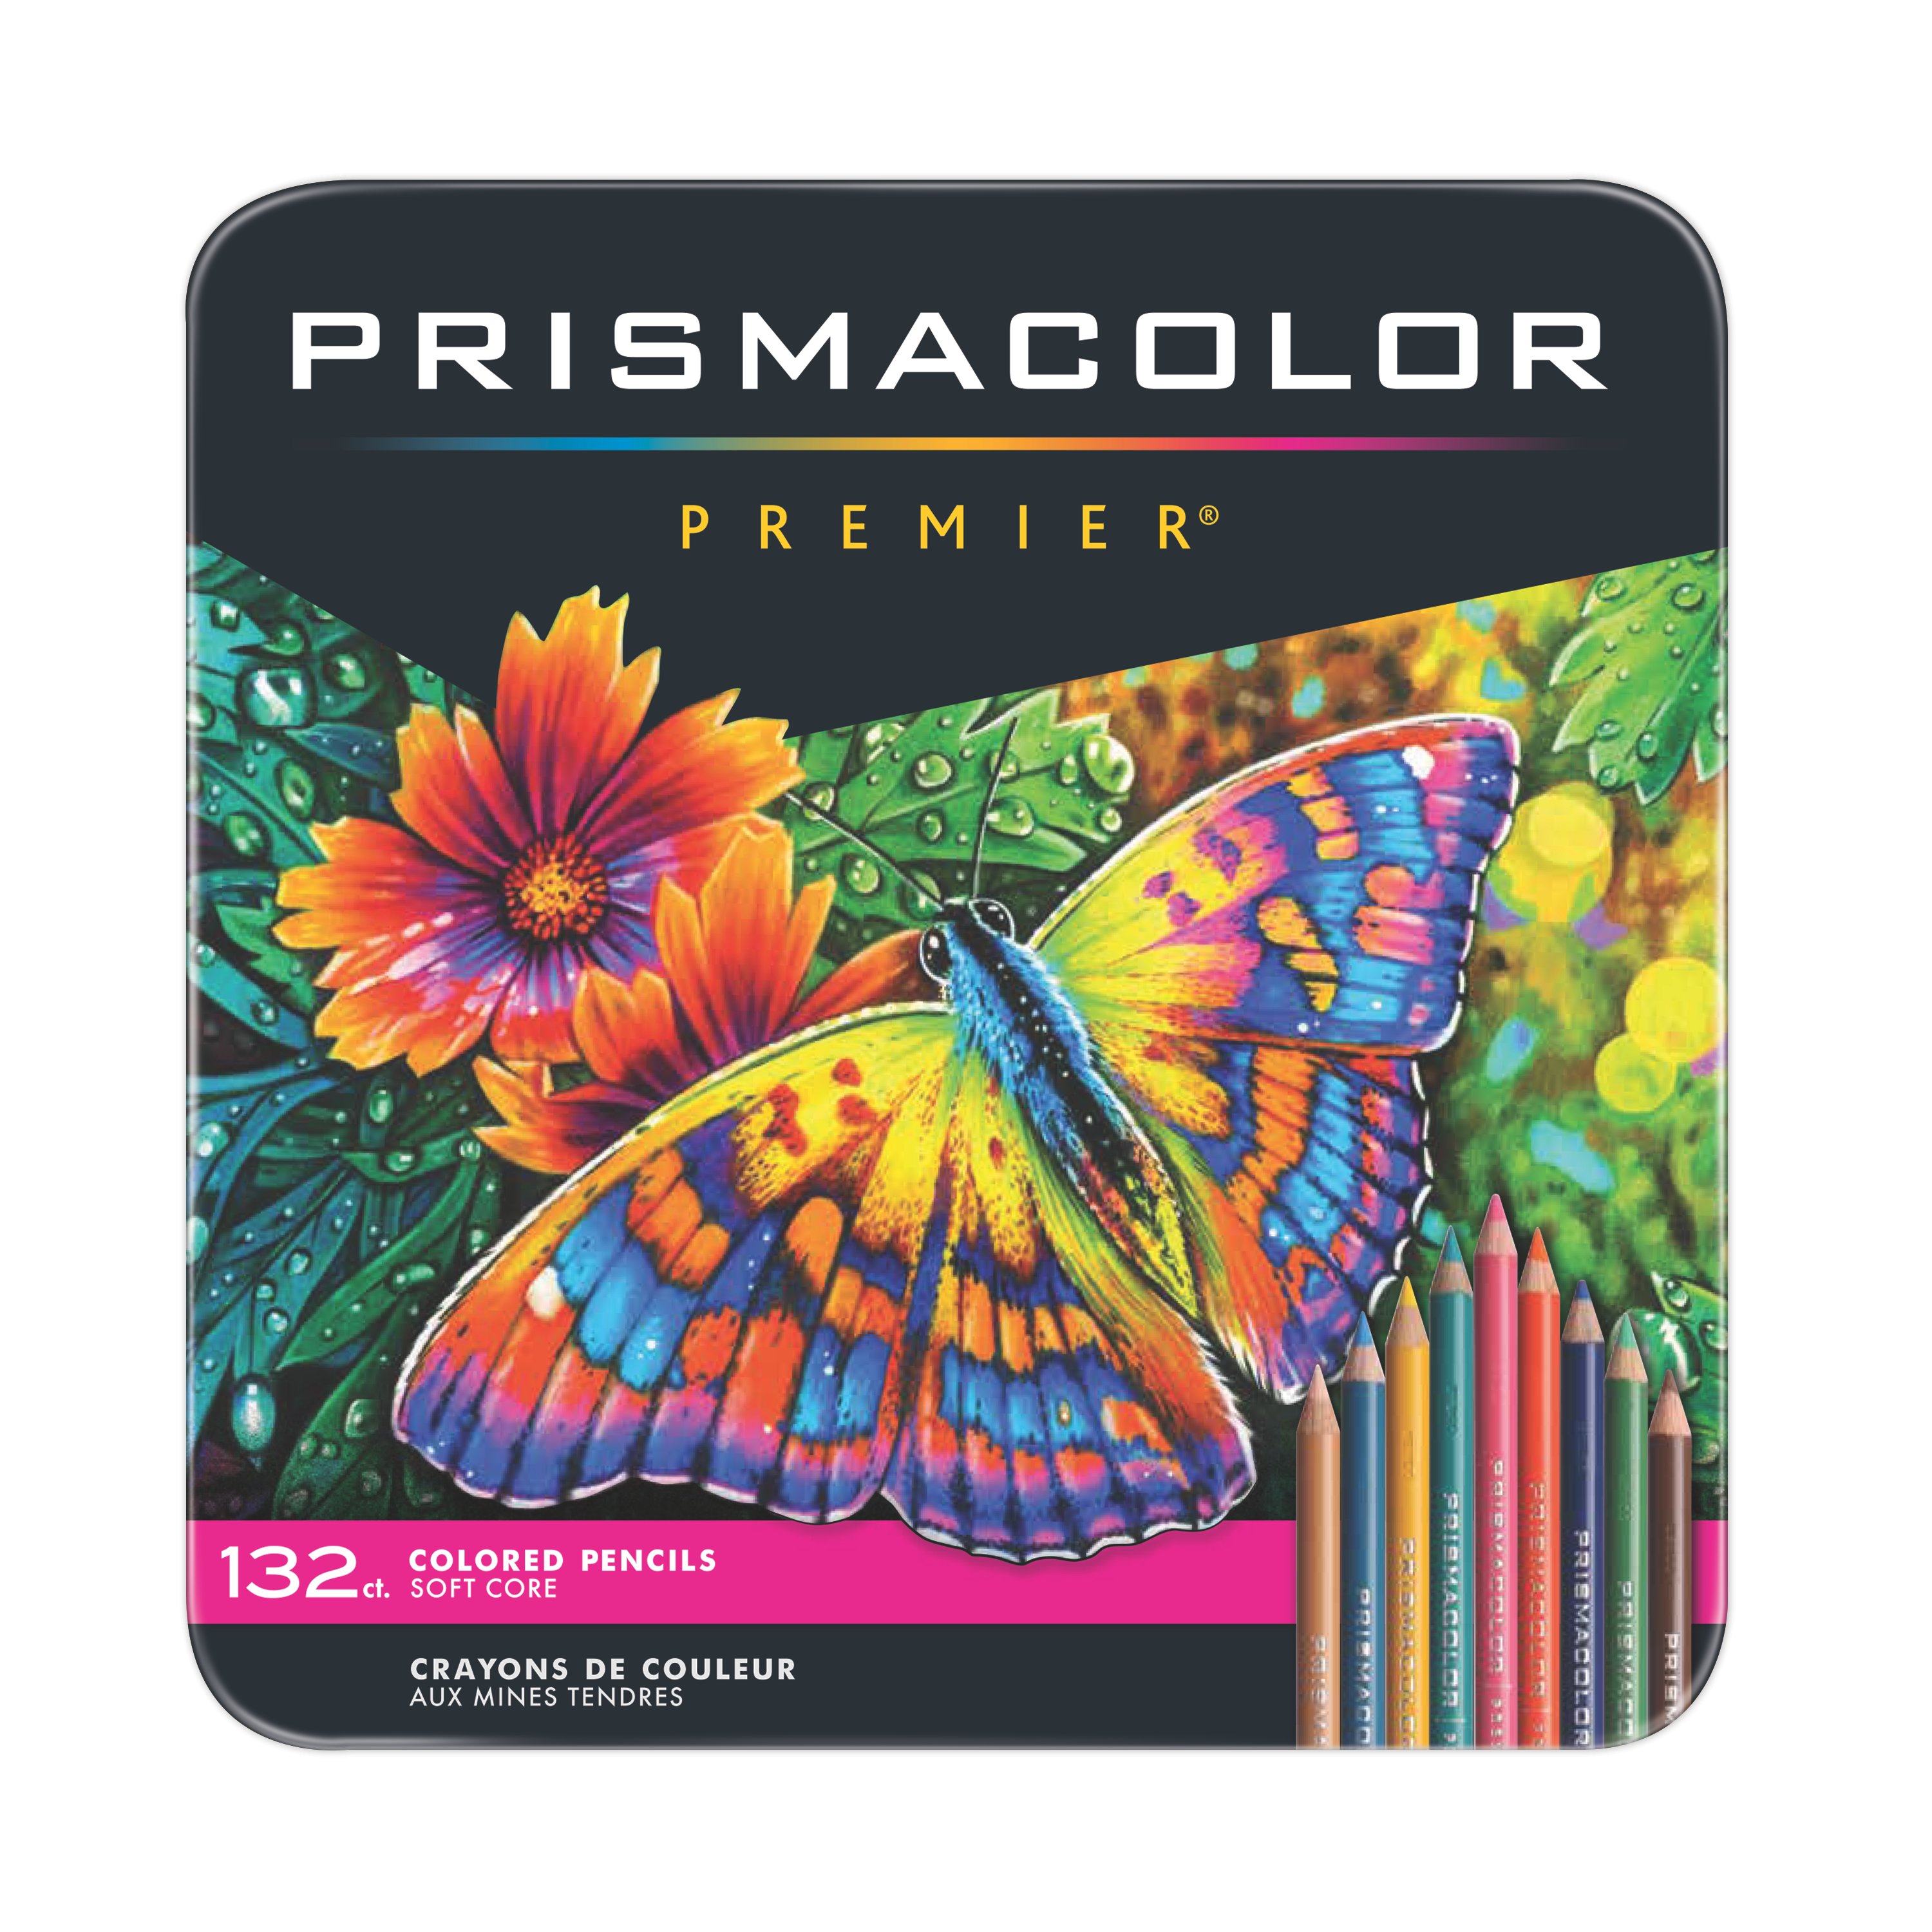 Lápices de Colores Profesionales Prismacolor Premier 150 piezas + Rega